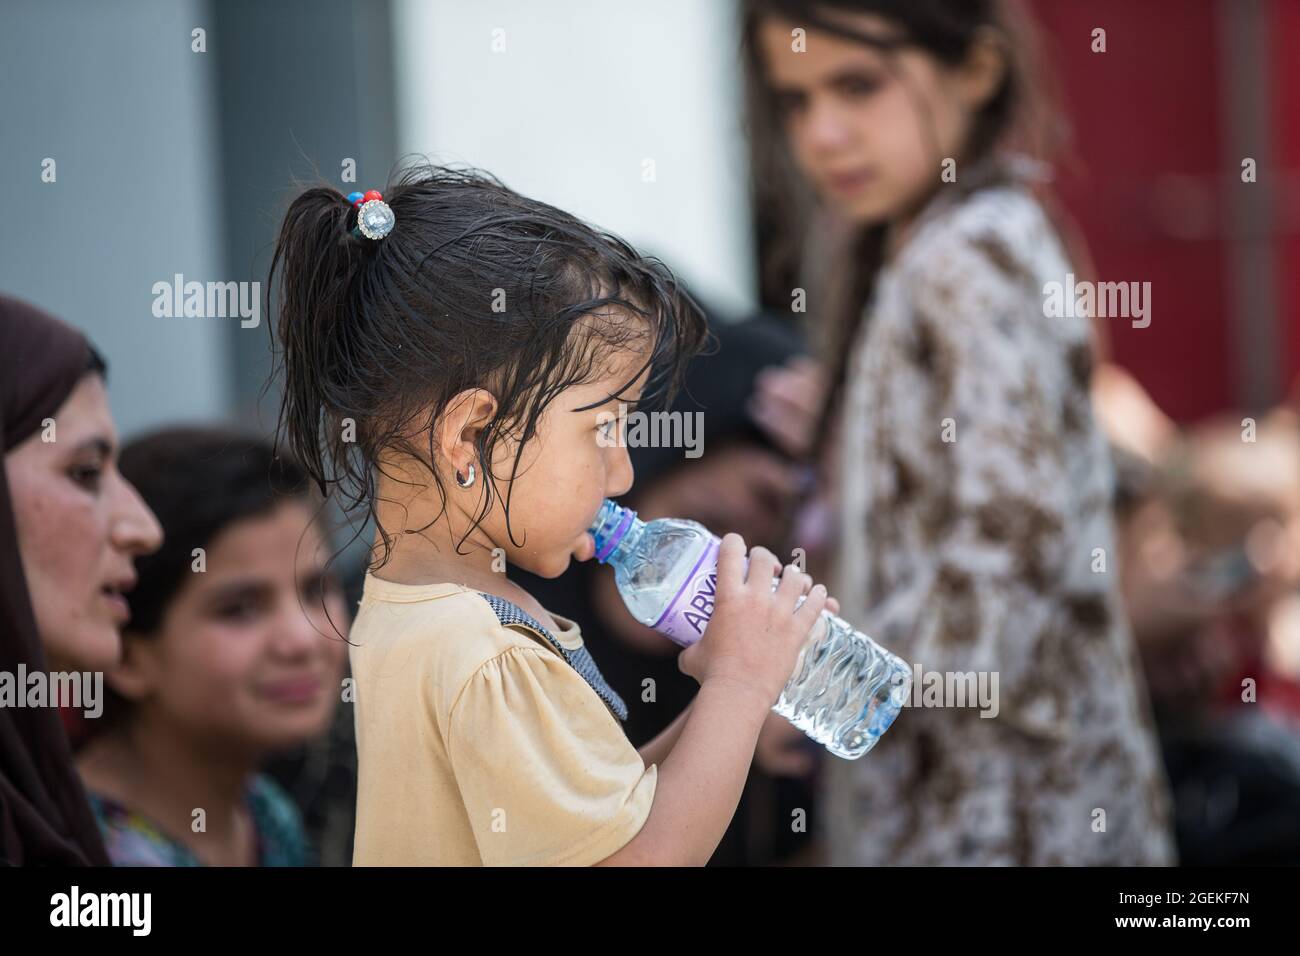 Kabul, Afghanistan. August 2021. Ein junges afghanisches Kind trinkt frisches Wasser, das während der Evakuierung von Zivilisten am Hamid Karzai International Airport im Rahmen der Operation Allies Refuge am 20. August 2021 in Kabul, Afghanistan, bereitgestellt wurde. Quelle: Planetpix/Alamy Live News Stockfoto